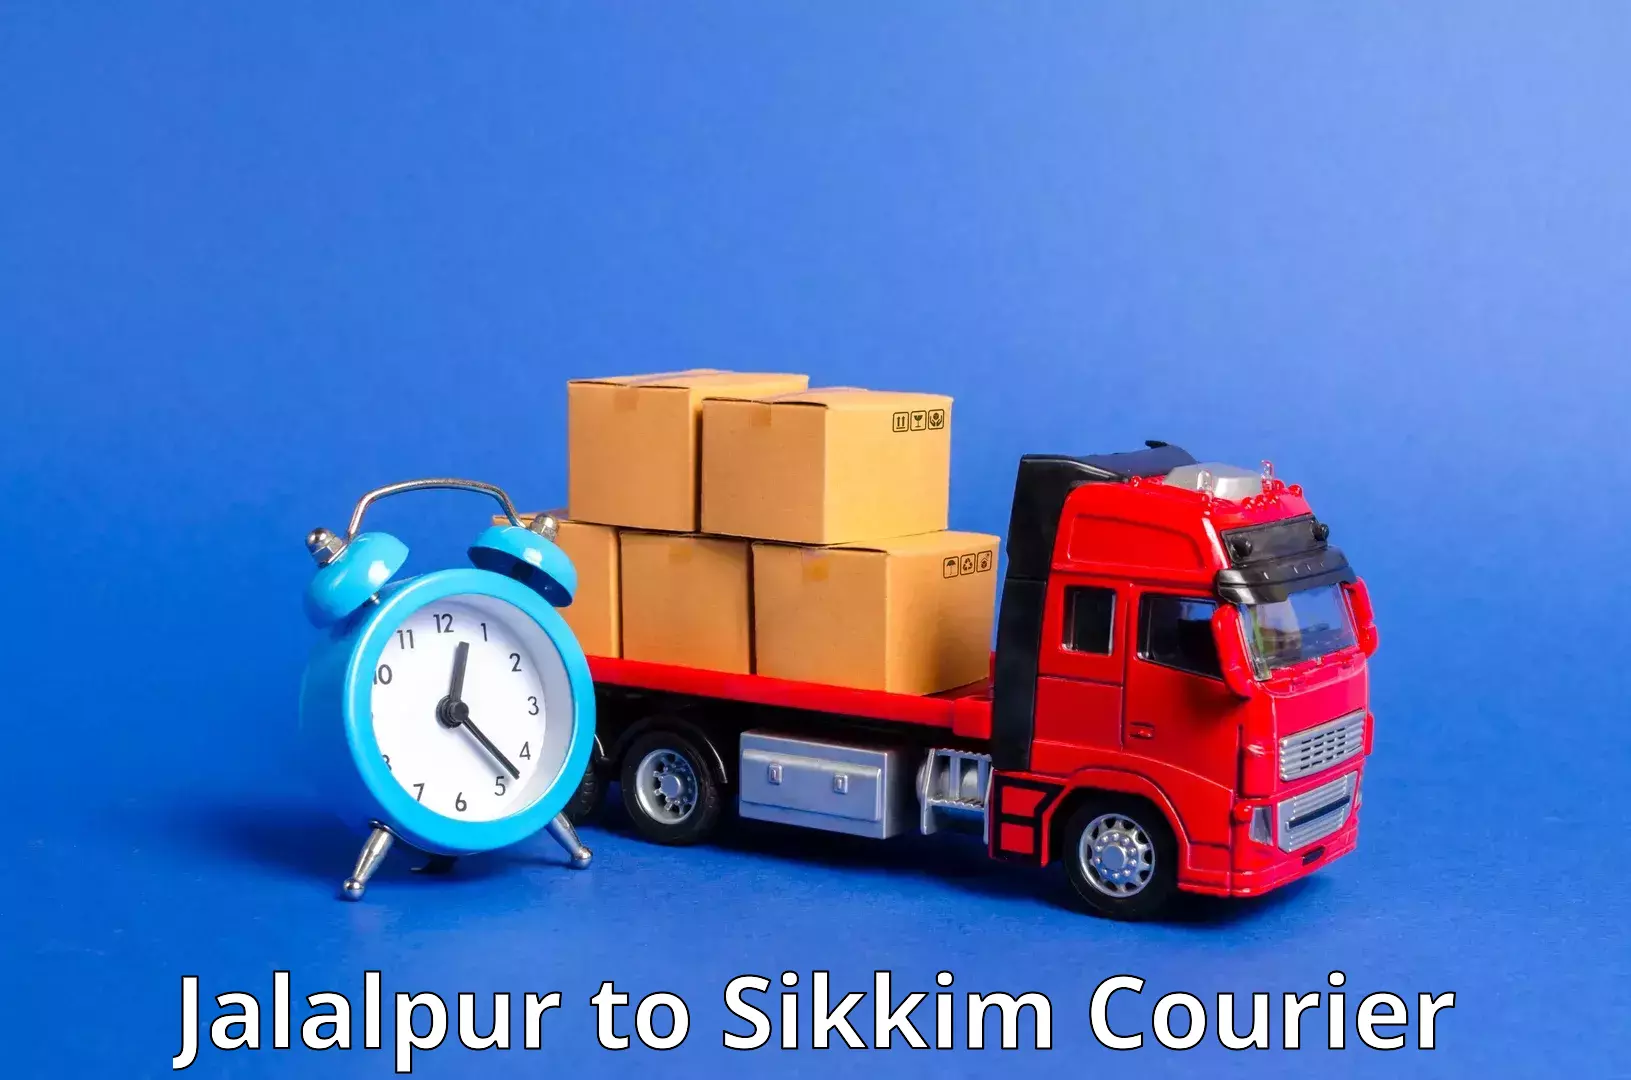 Courier service comparison Jalalpur to East Sikkim